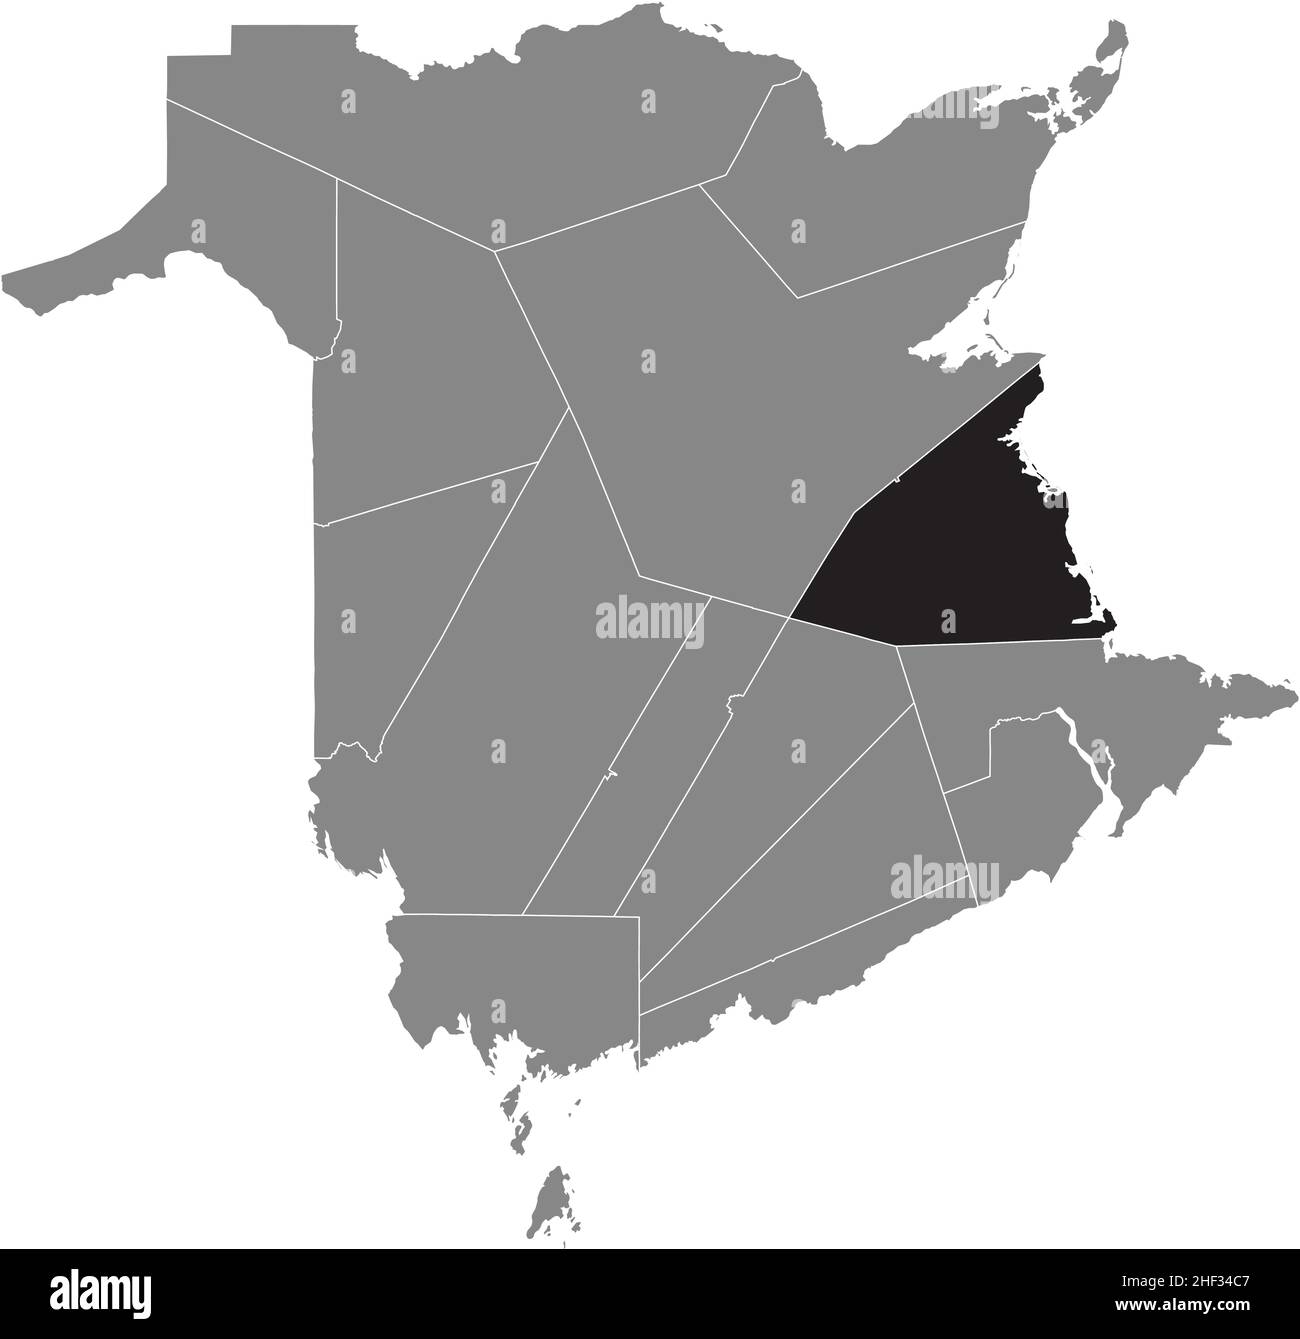 Nero piatto vuoto evidenziato mappa della posizione della CONTEA DI KENT all'interno di grigio mappa amministrativa delle contee del territorio canadese di New Brunswick, Canada Illustrazione Vettoriale